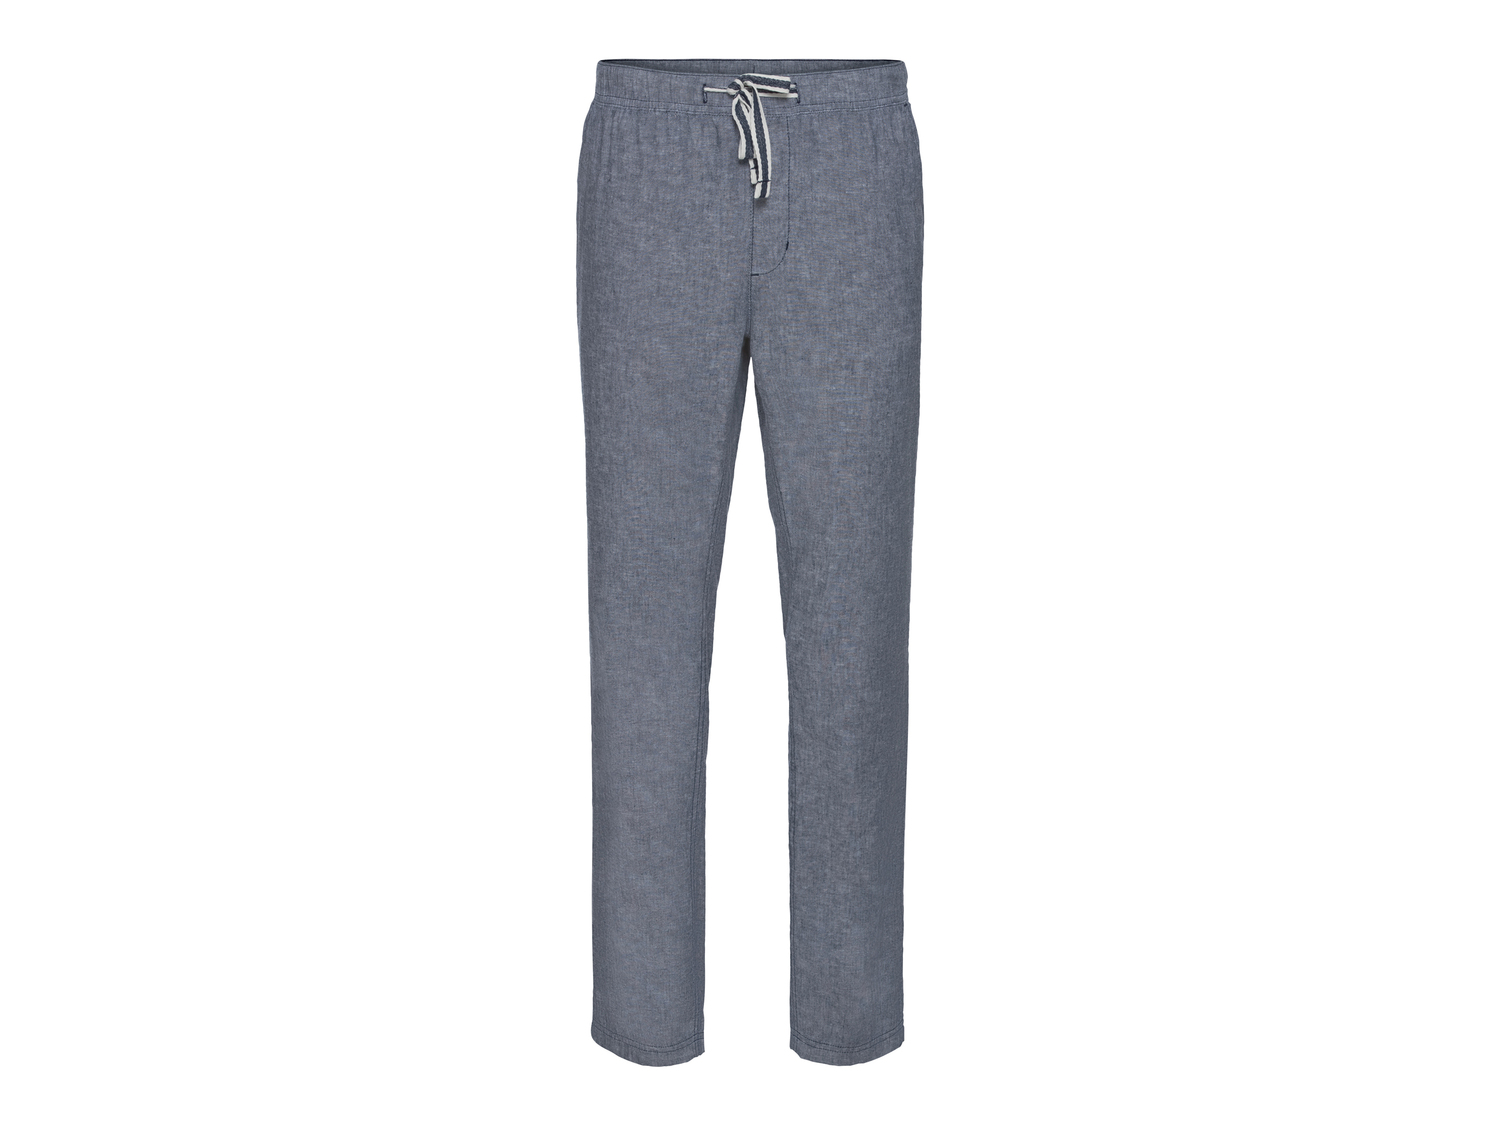 Pantaloni in lino da uomo Livergy, prezzo 9.99 &#8364; 
Misure: 48-54
Taglie ...